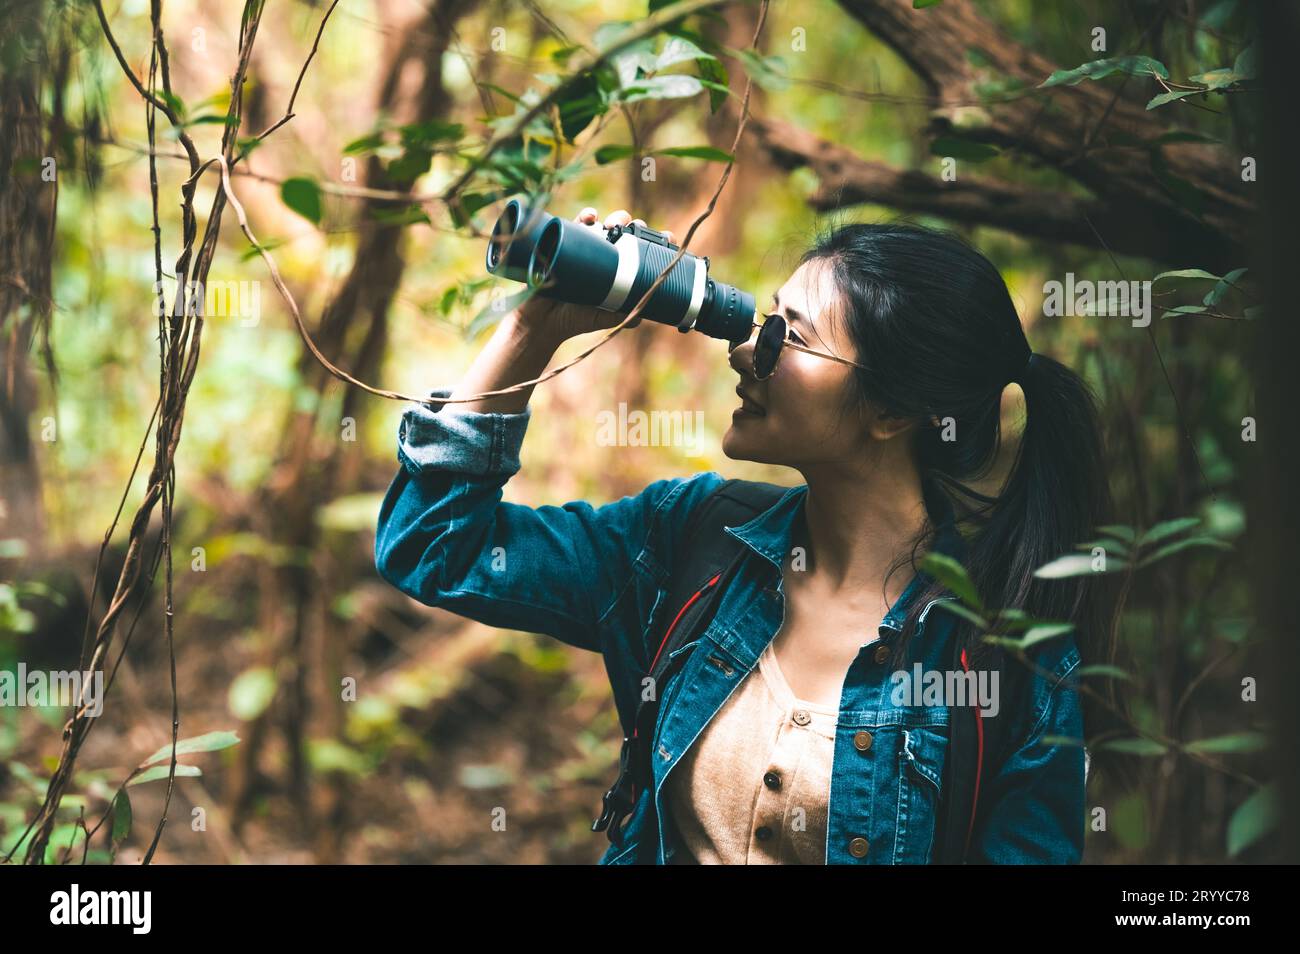 Schöne asiatische Frau mit Fernglas Teleskop in Wald aussehendes Ziel. Lebensstil und Freizeitaktivitäten der Menschen. Natur und Stockfoto